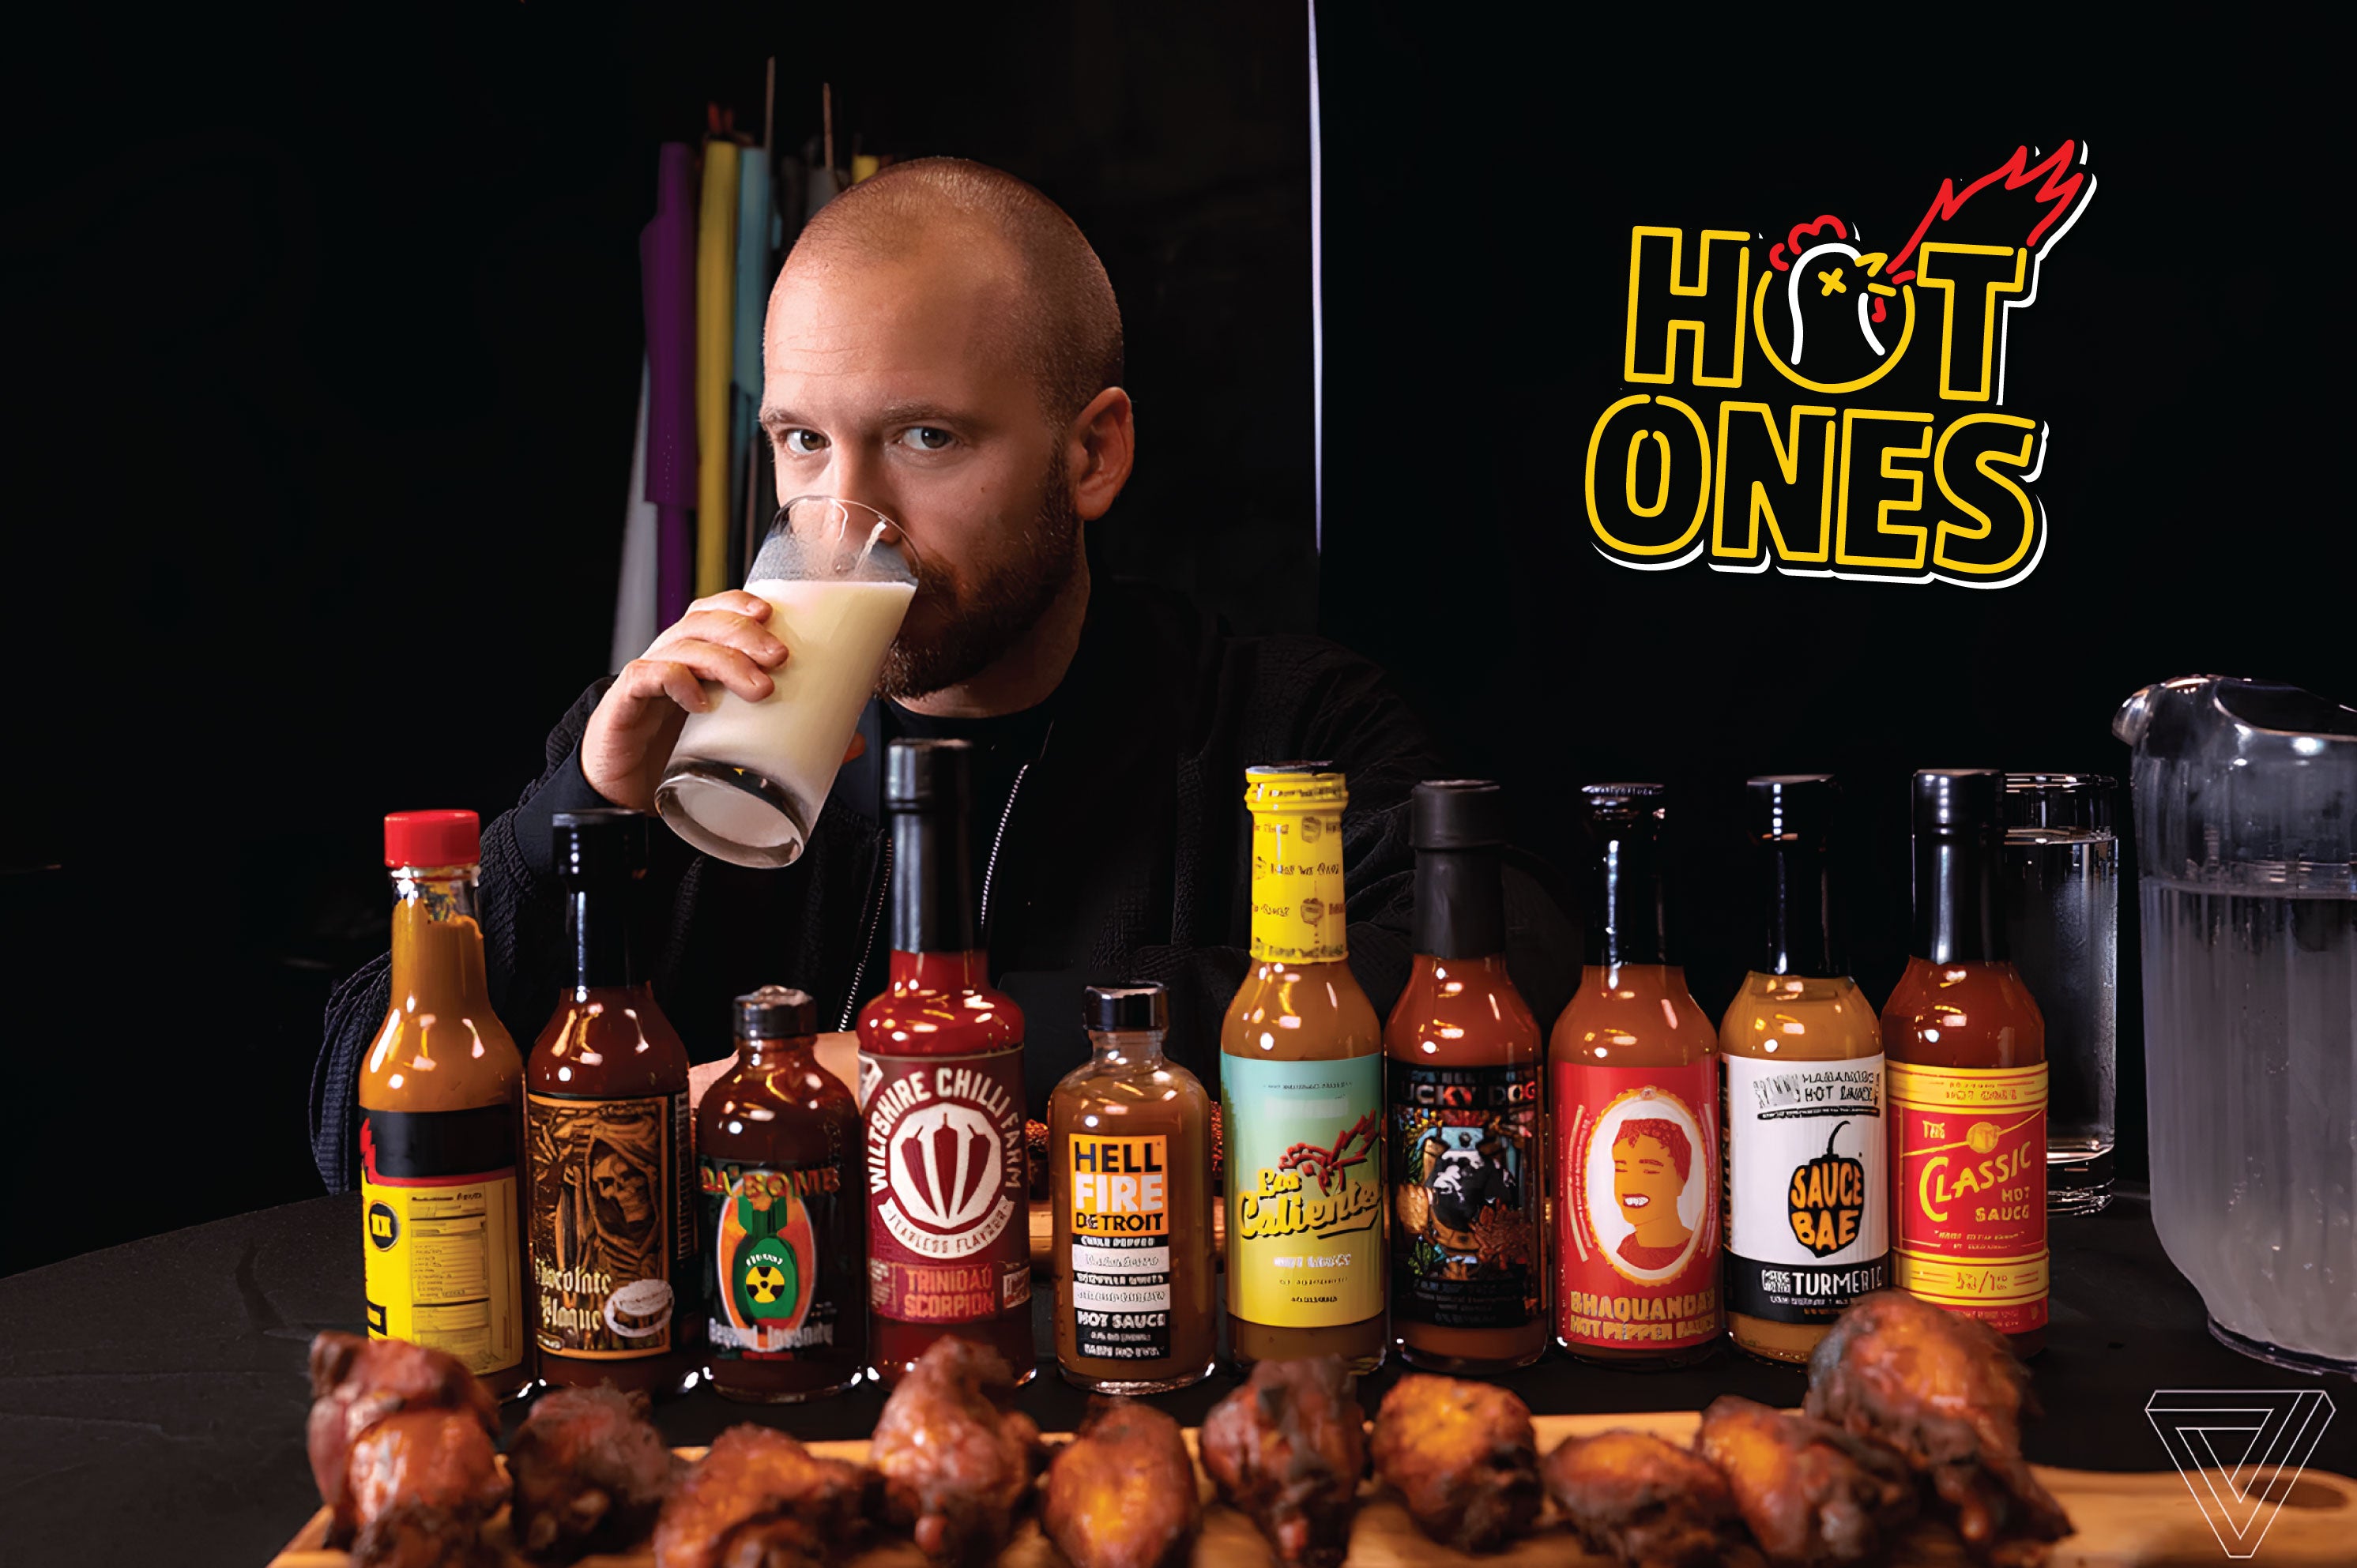 hot ones hot sauce online